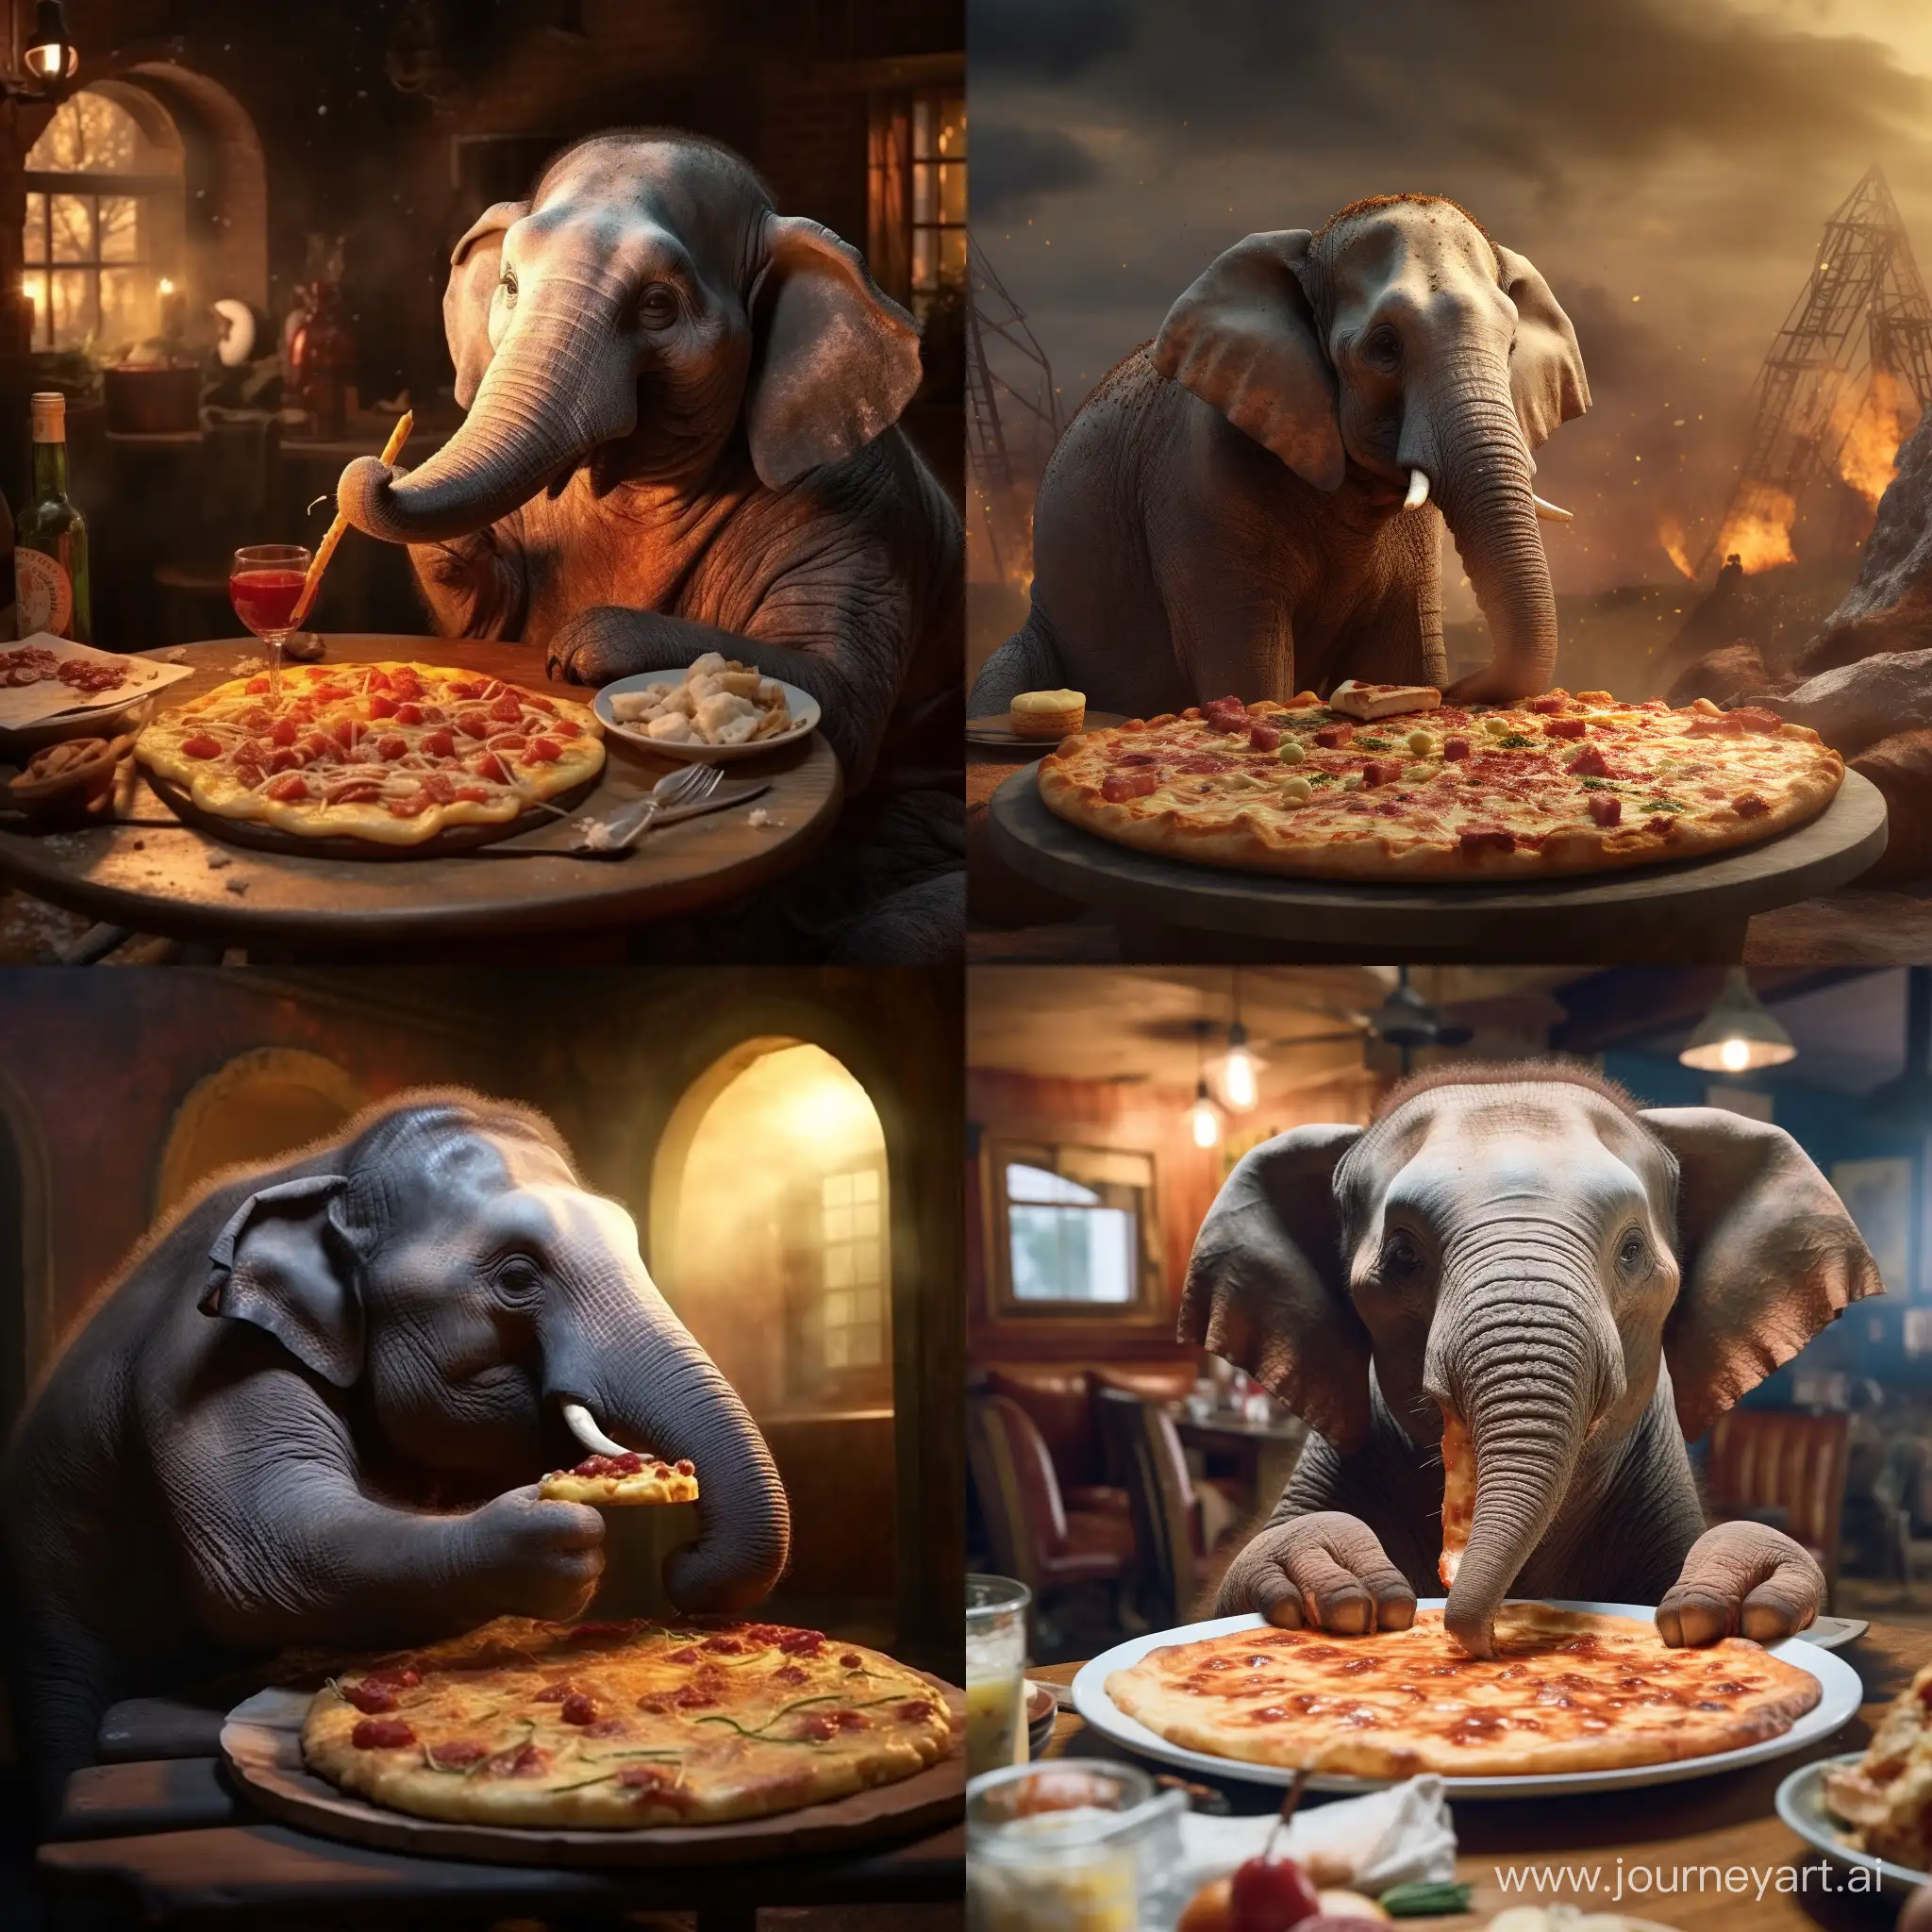 Elephant-Enjoying-a-Pizza-Feast